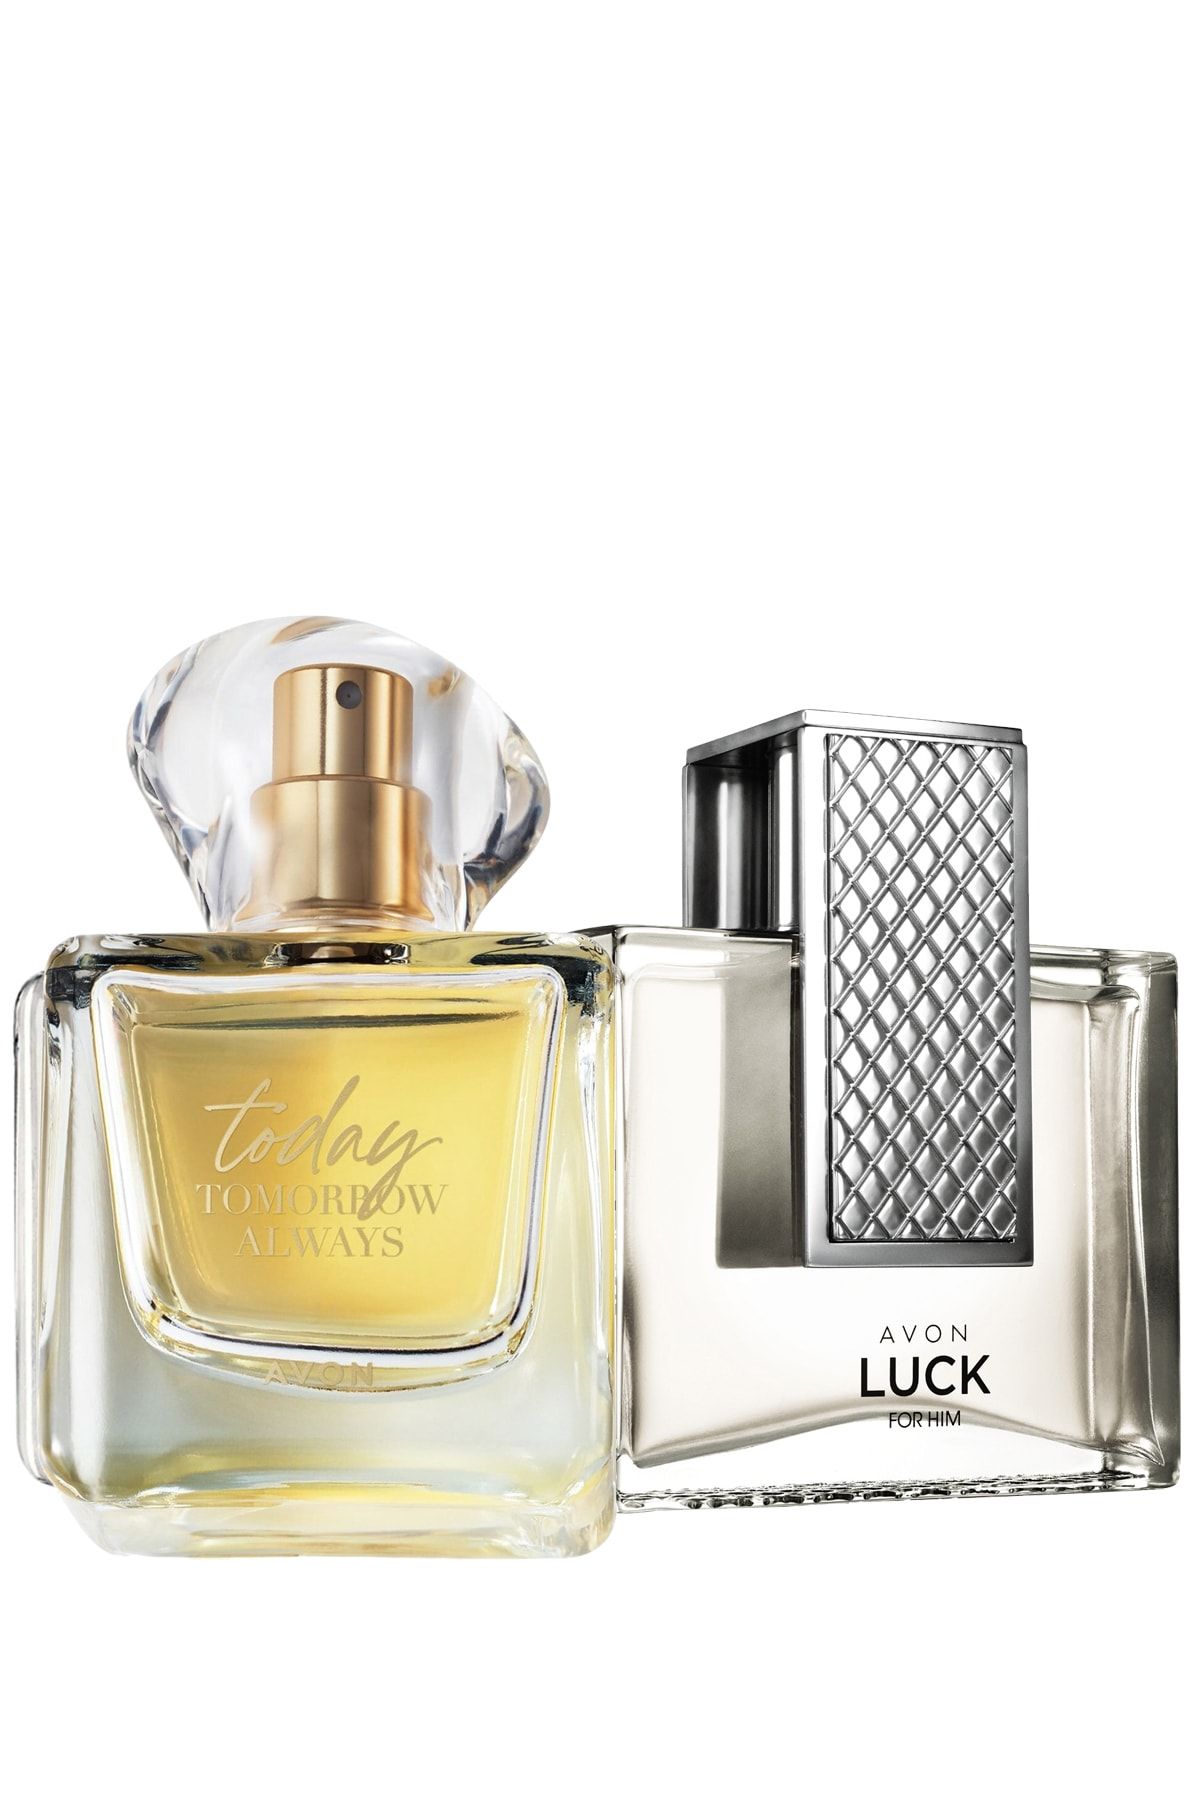 Avon Luck Erkek Parfüm ve Today Kadın Parfüm Paketi